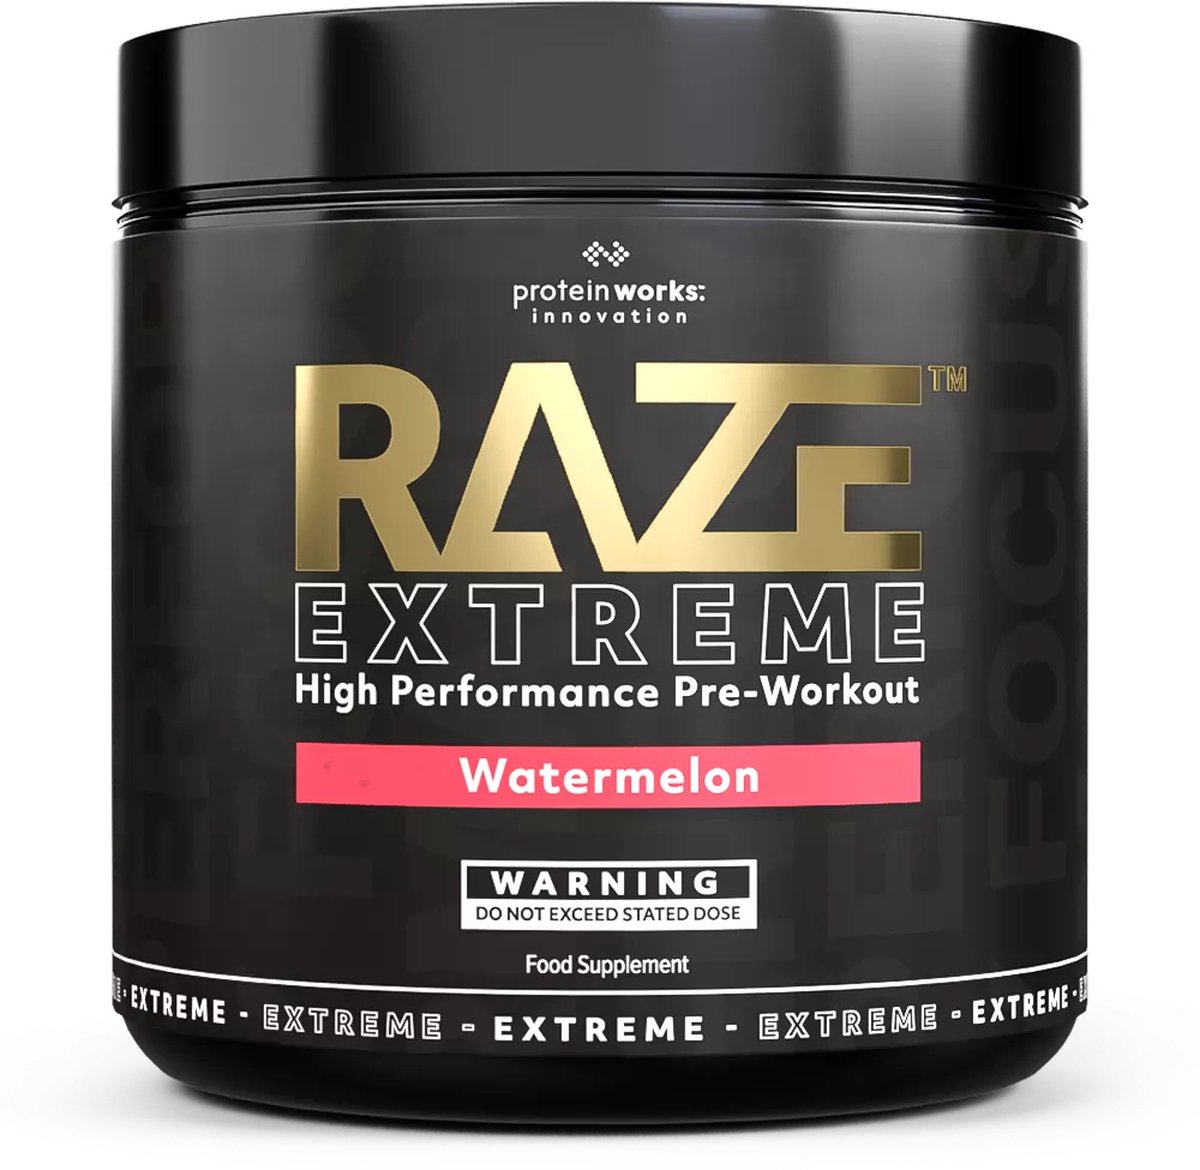 The Protein Works - Raze Extreme - Pre-workout - Blue Raspberry